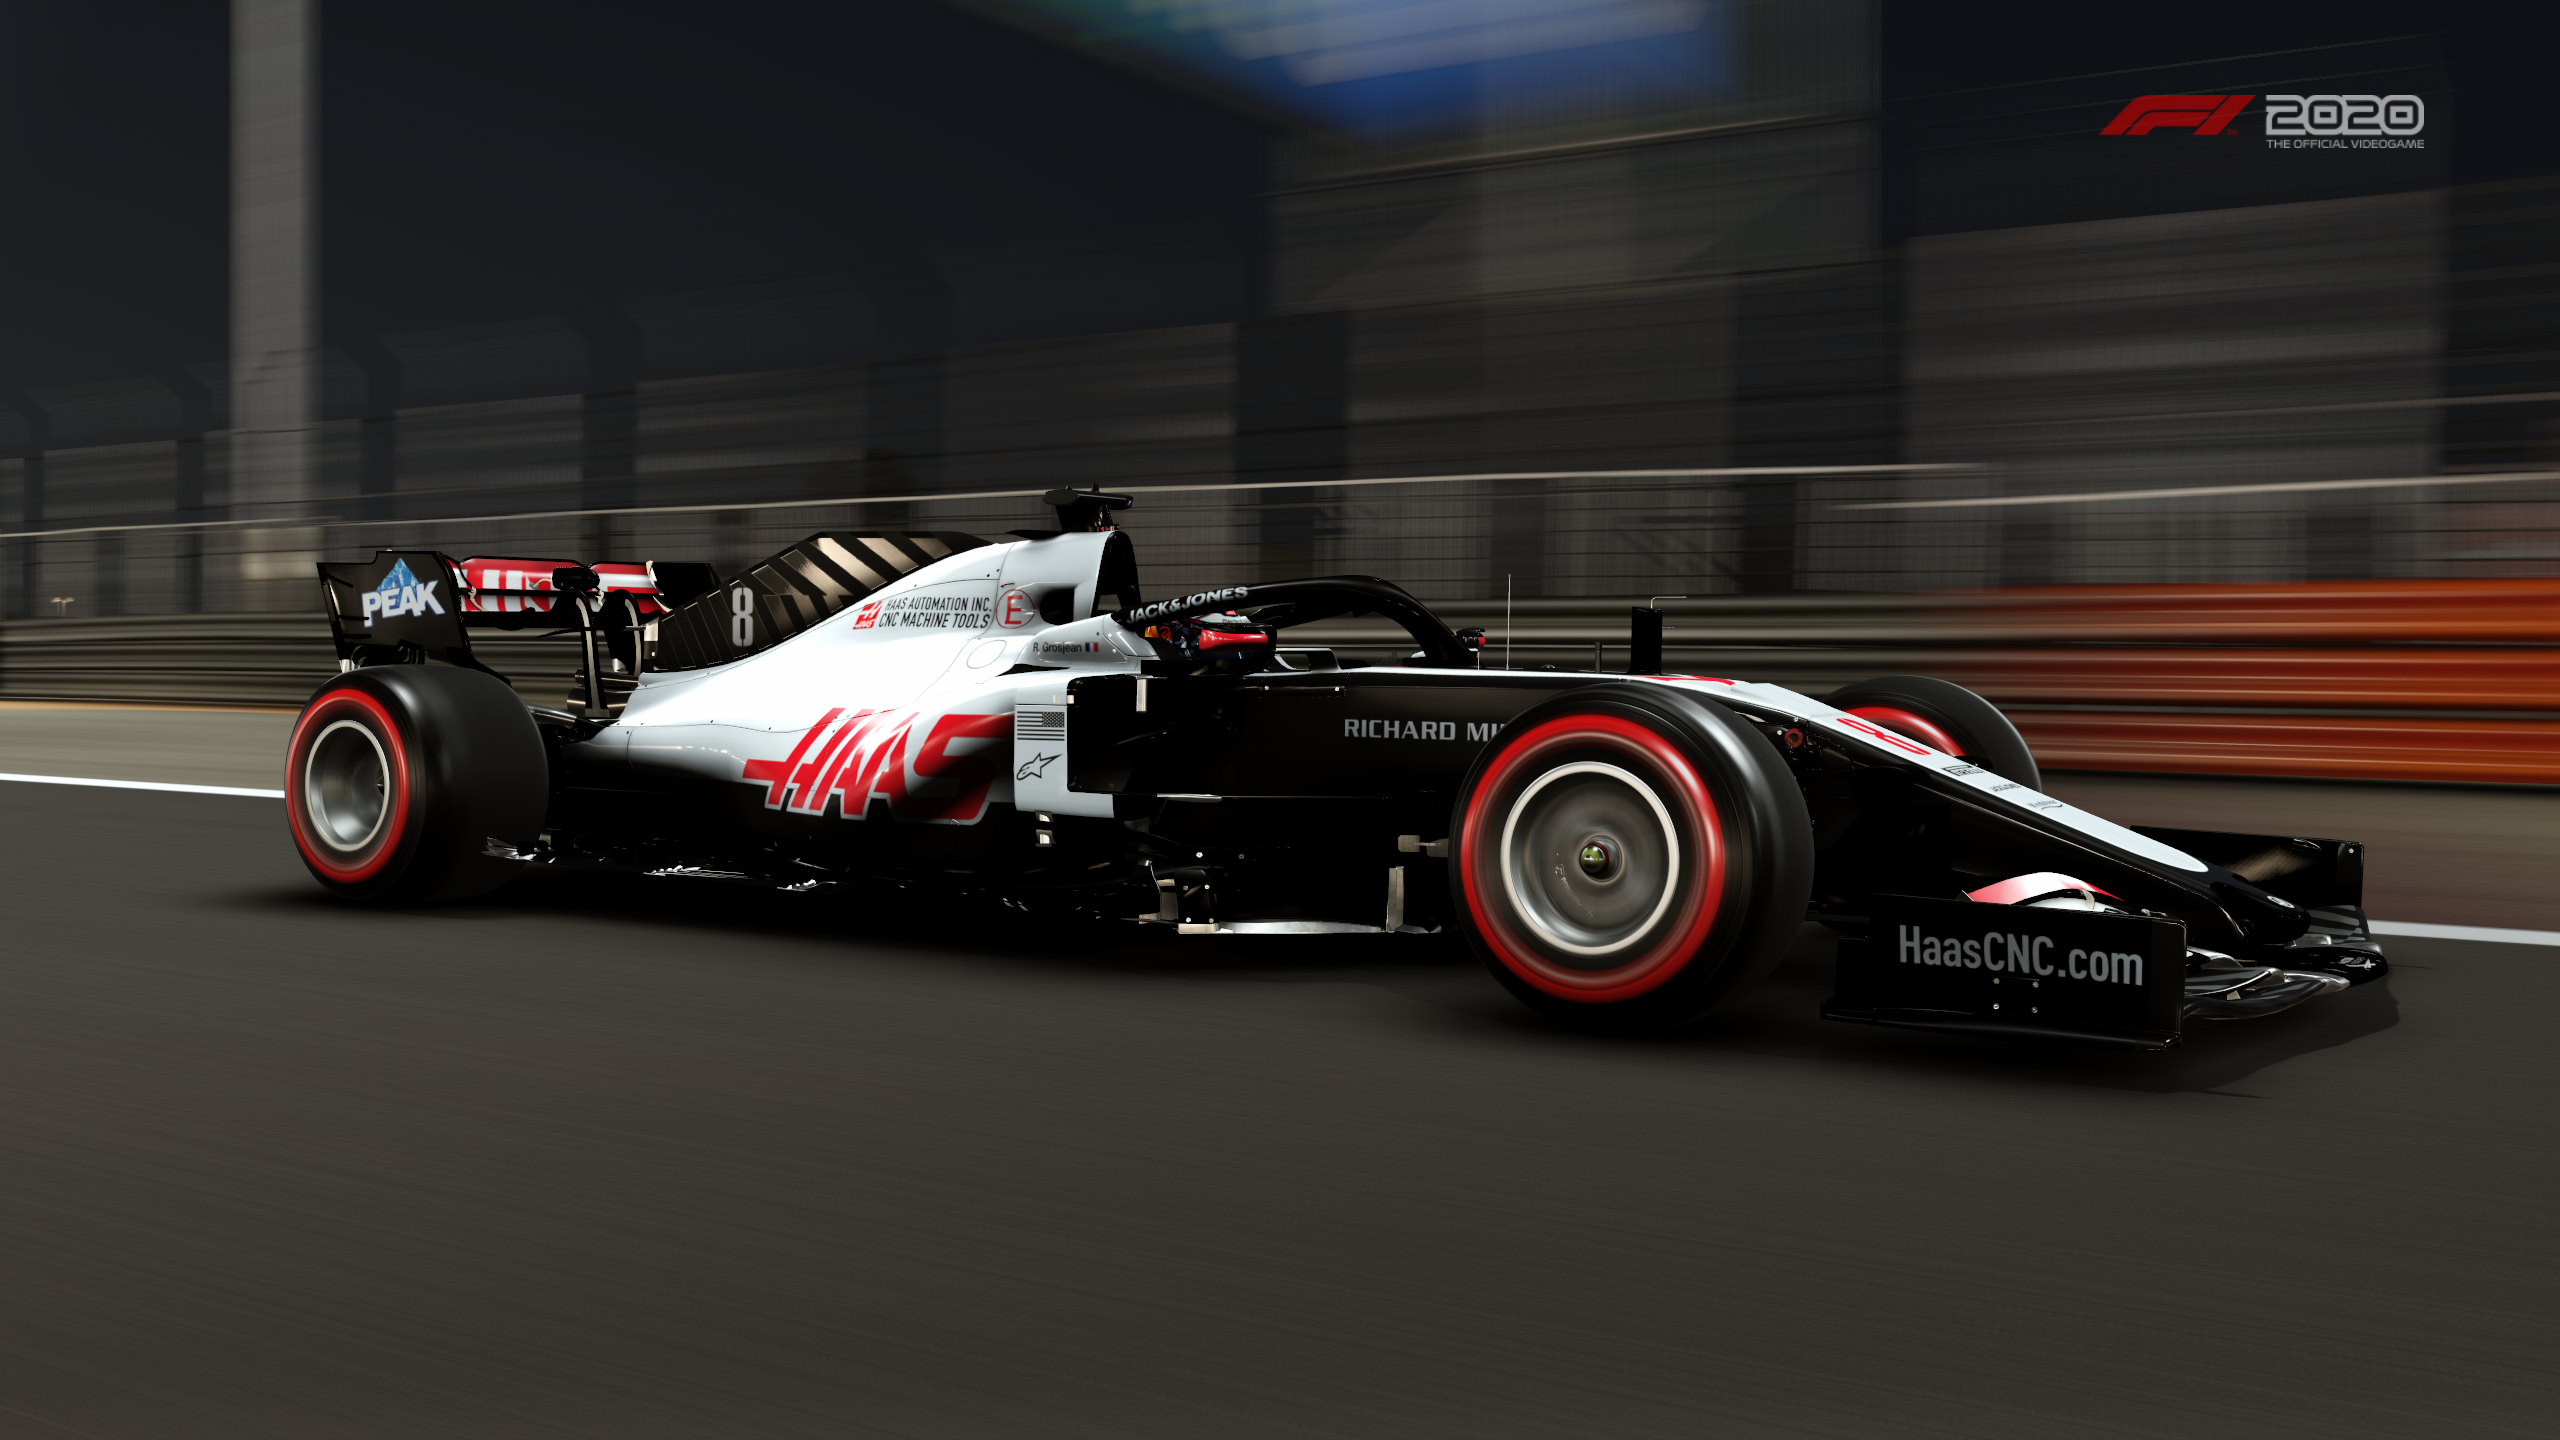 F1 2020 Haas F1 Team Vf 20 2560x1440